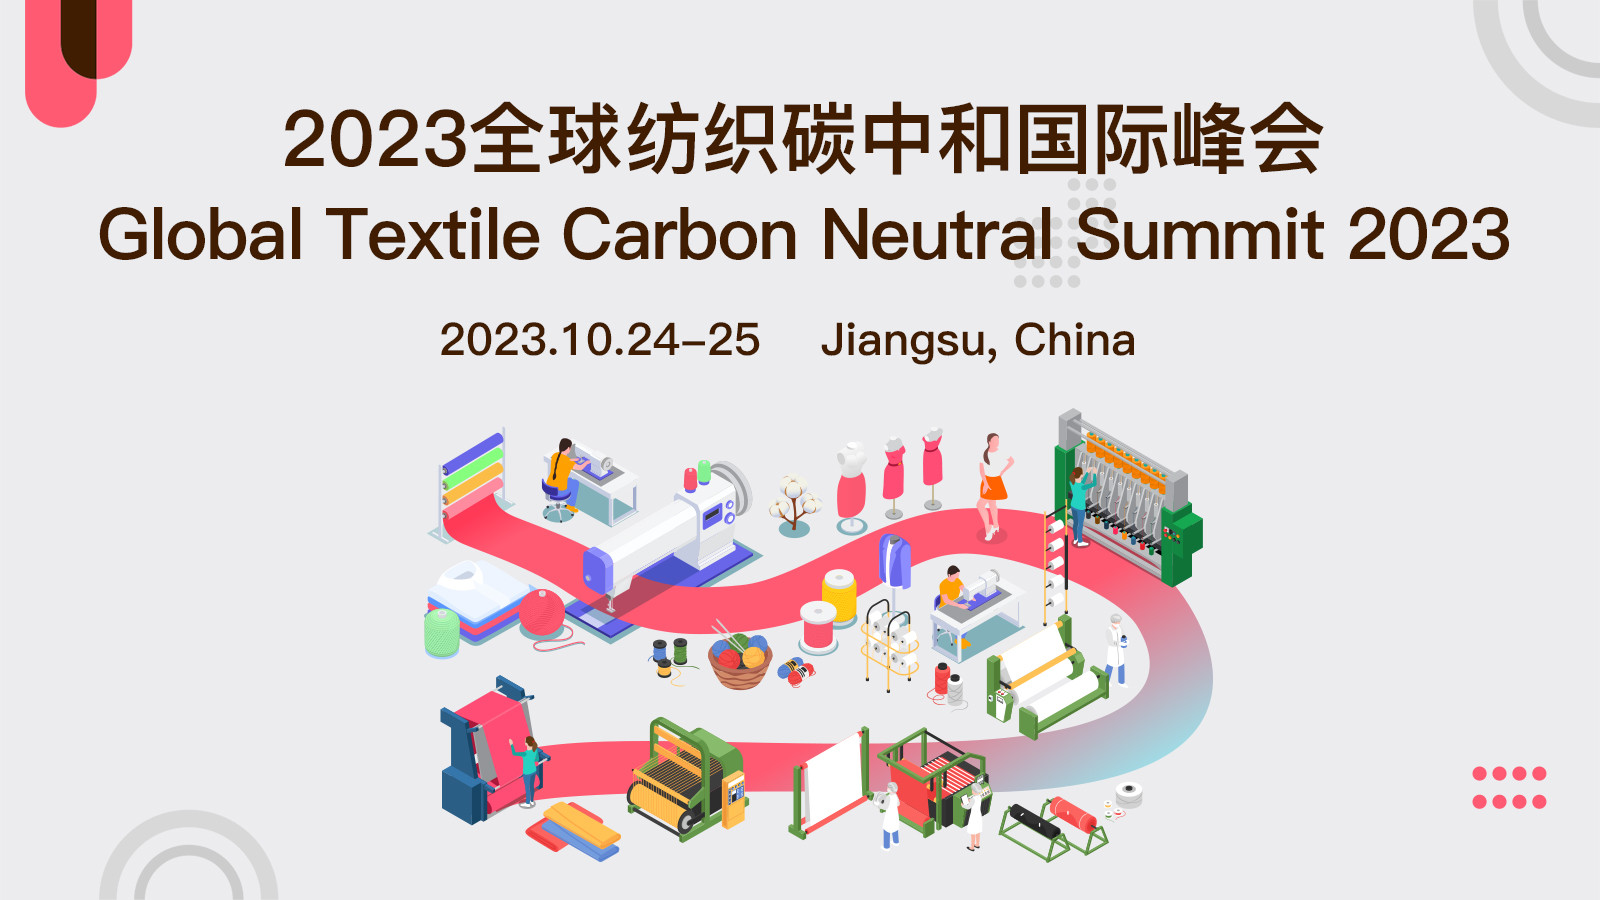 2023全球紡織碳中和國際峰會